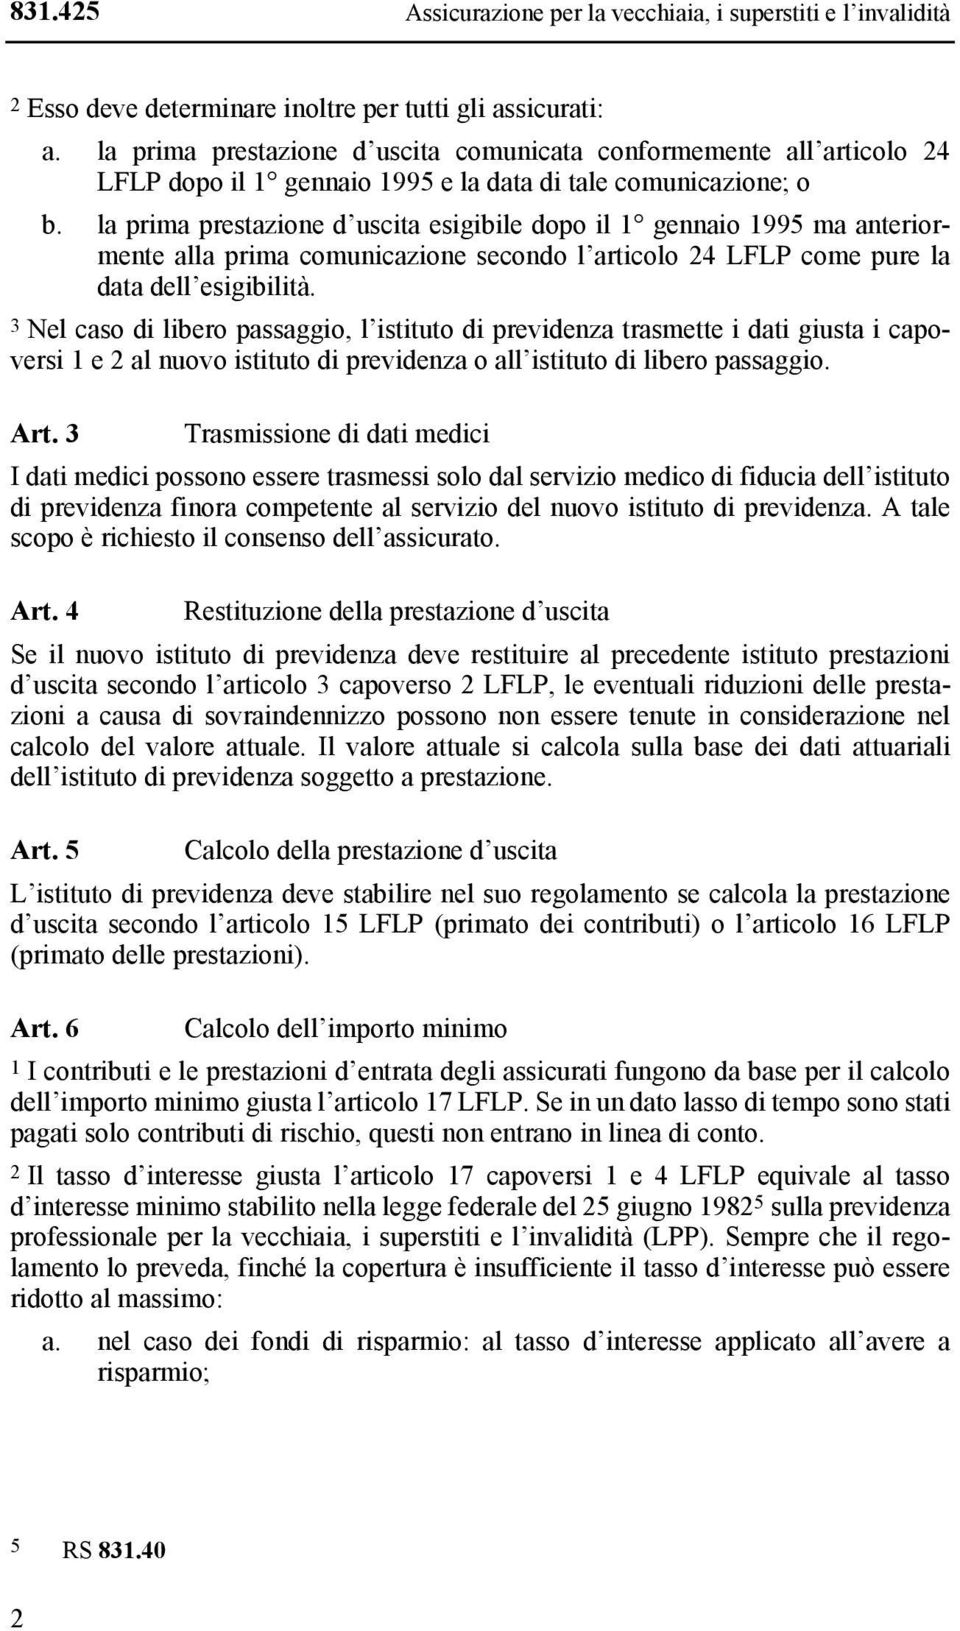 la prima prestazione d uscita esigibile dopo il 1 gennaio 1995 ma anteriormente alla prima comunicazione secondo l articolo 24 LFLP come pure la data dell esigibilità.